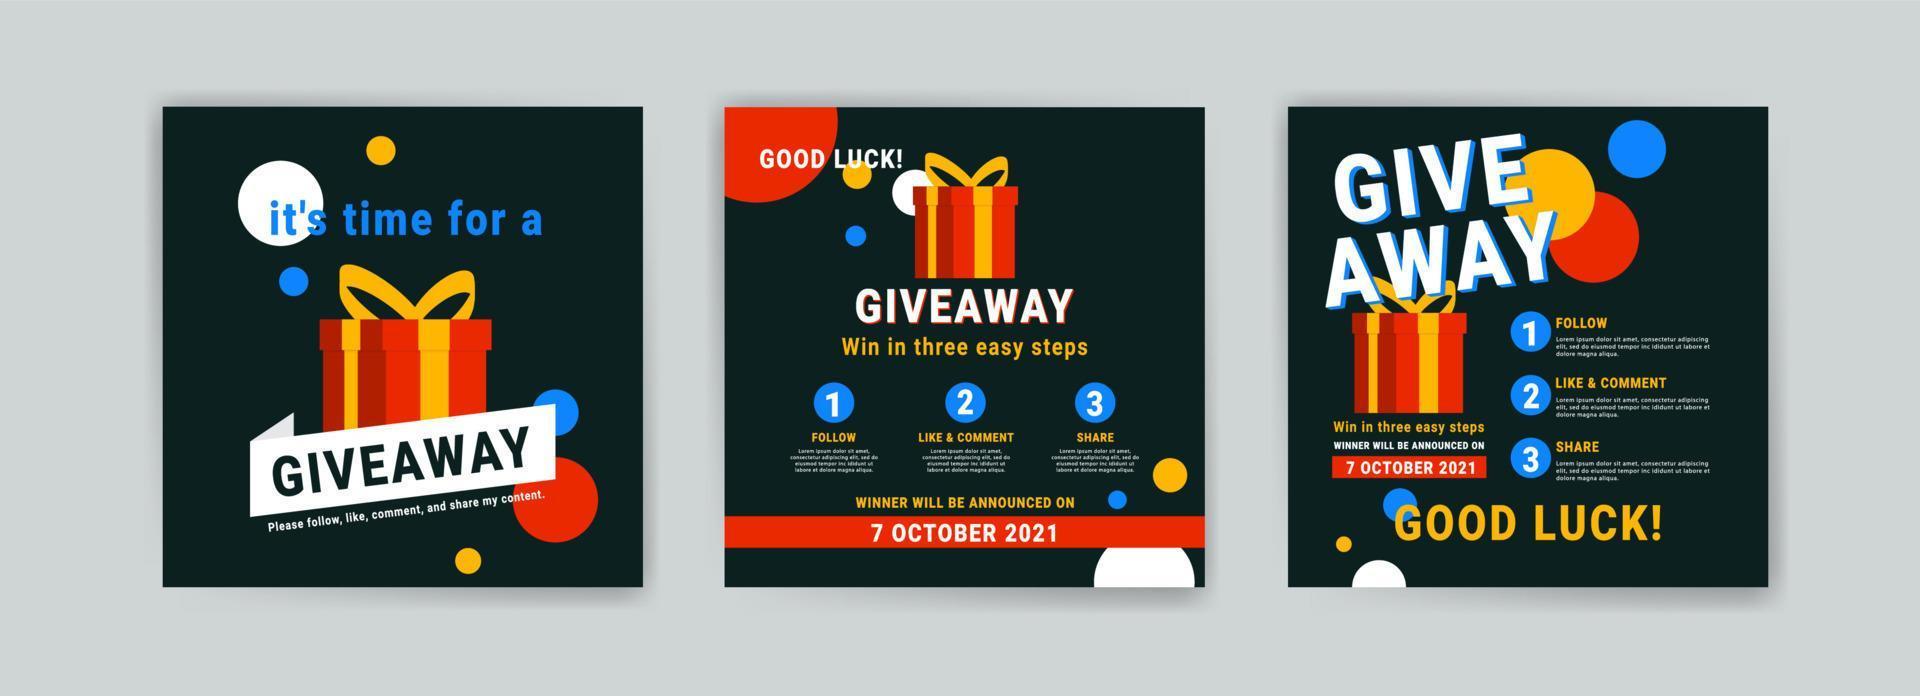 giveaway affisch mall design för sociala medier inlägg eller webbplats banner. vektor